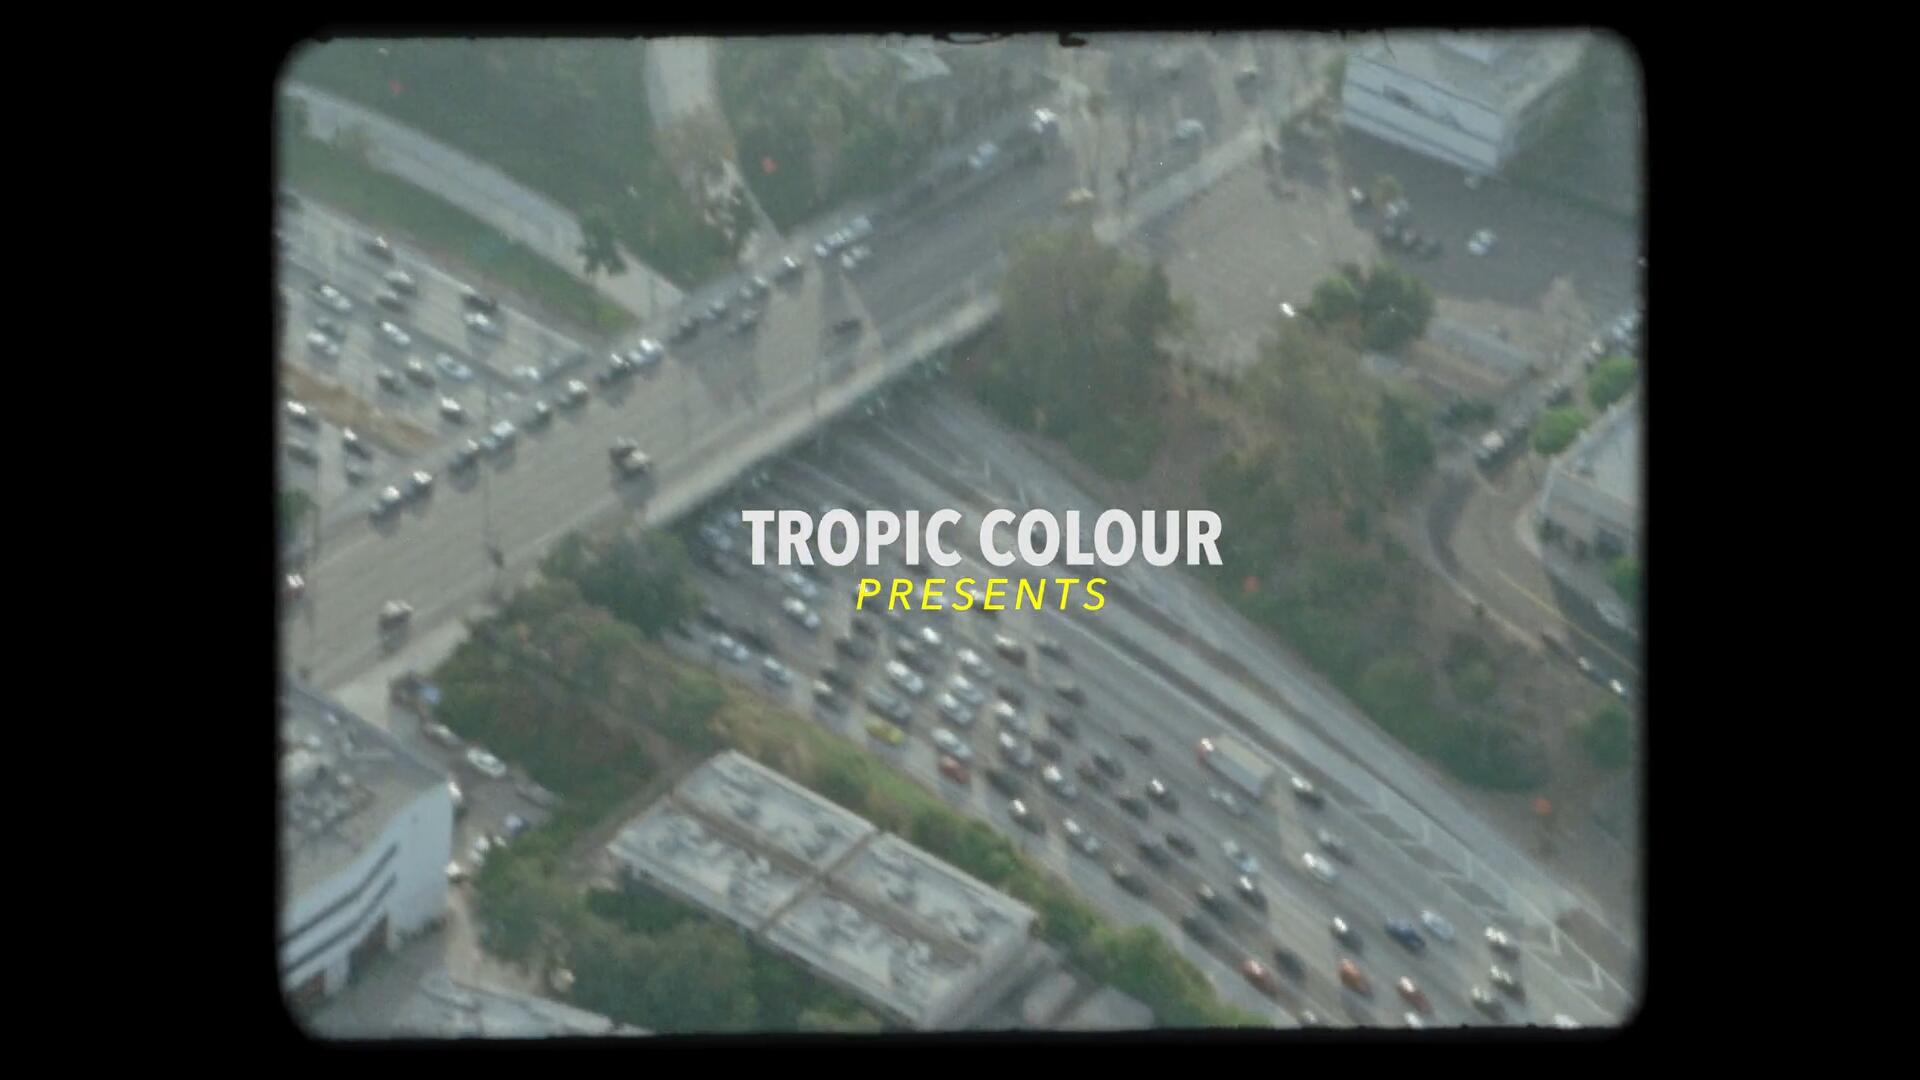 复古洛杉矶城市胶片航拍VHS影视摄影片段4K视频素材 Tropic Colour – LA AERIAL FILM STOCK FOOTAGE（9016）图层云